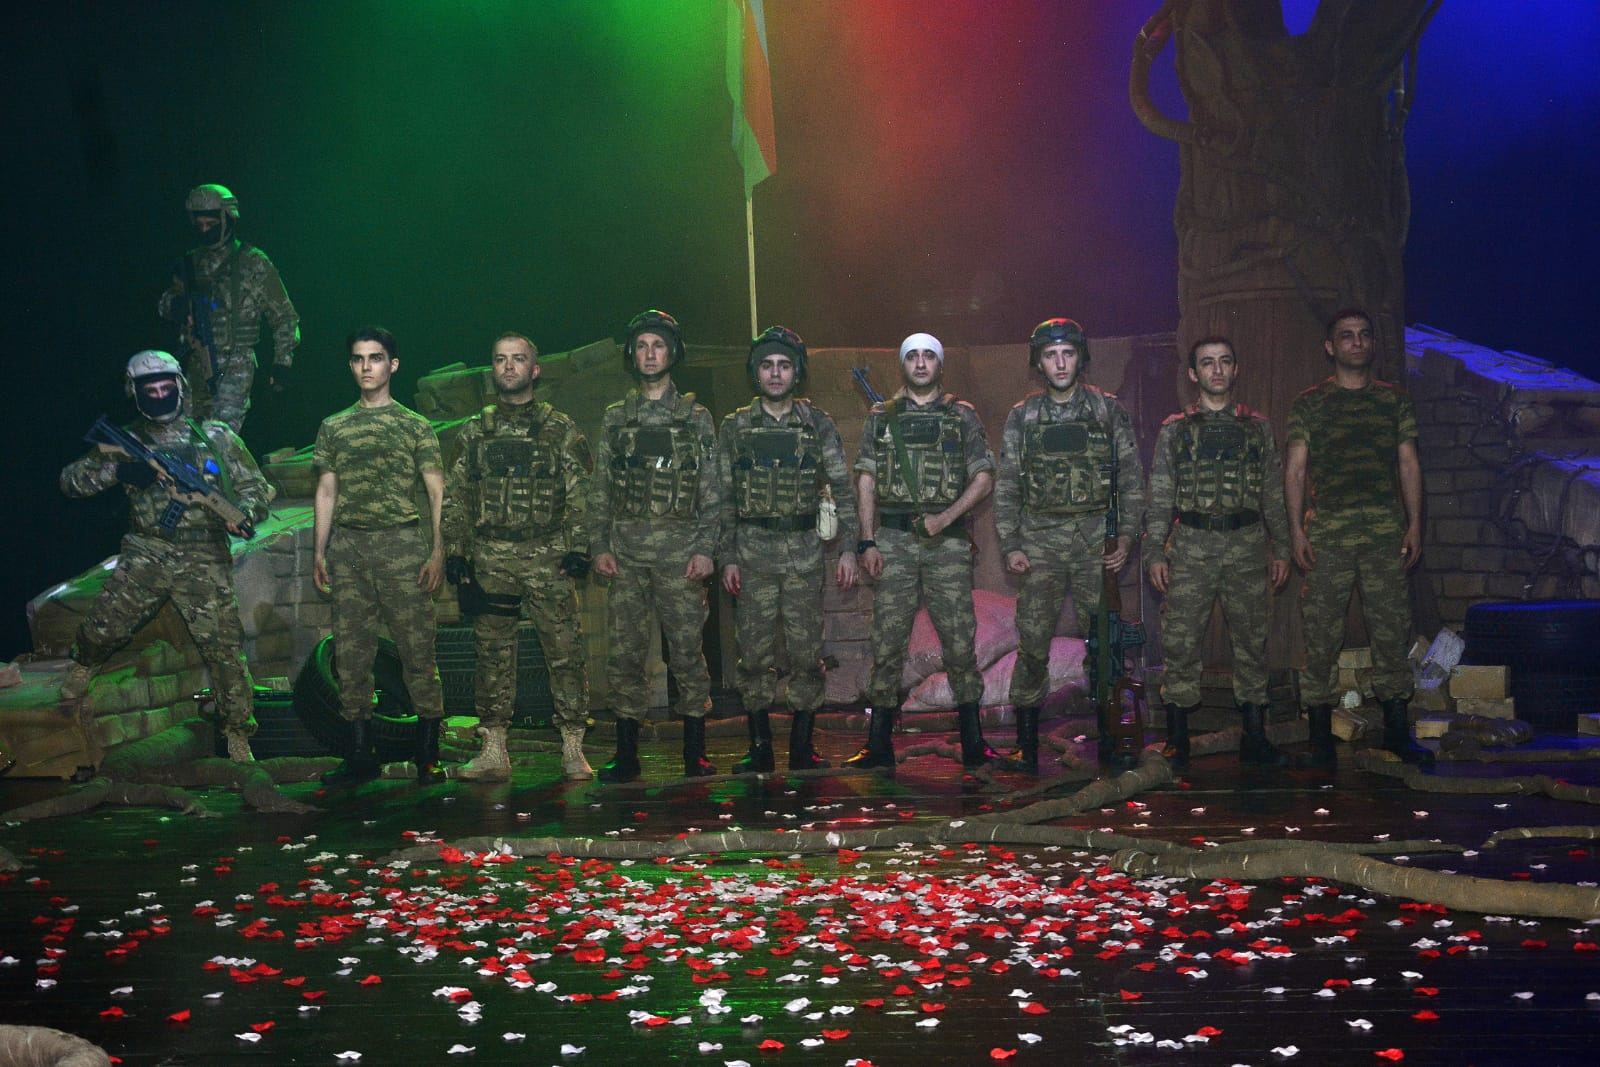 В Баку состоялась премьера спектакля "Balaca kişilər" по реальным событиям Карабахской войны (ФОТО)